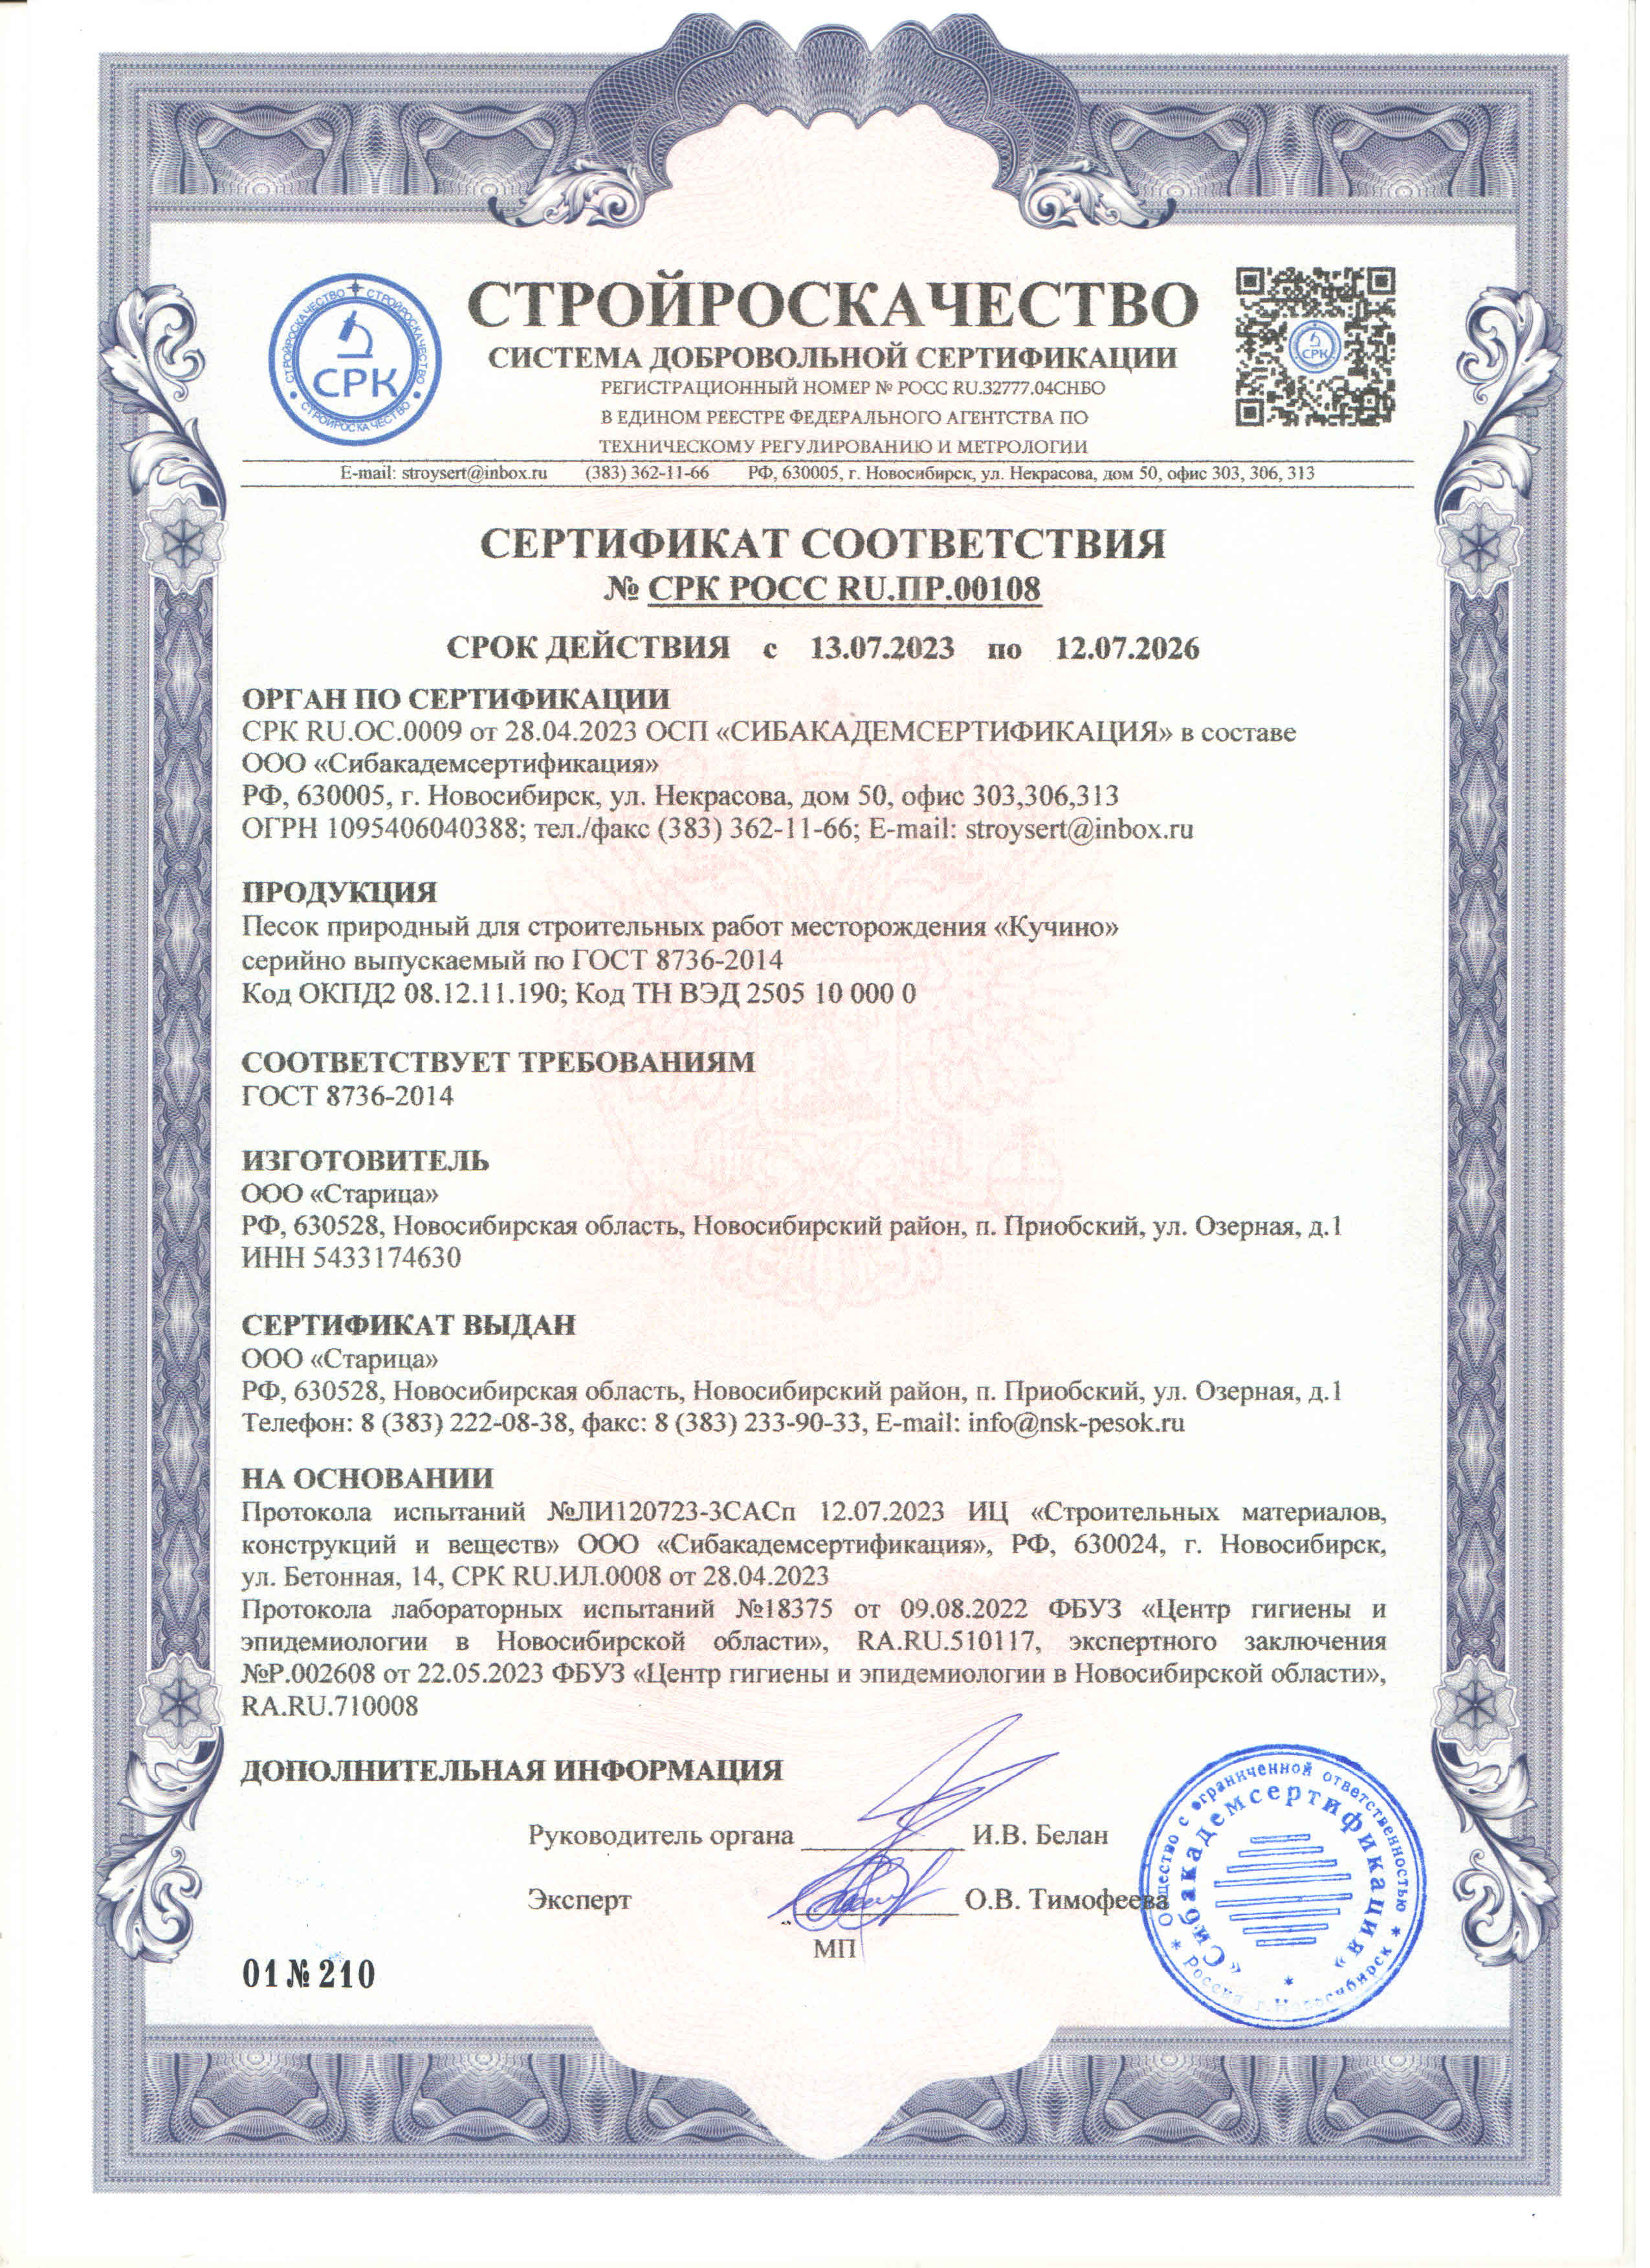 Сертификат соответствия 2023-2026 на песок карьер Кучино